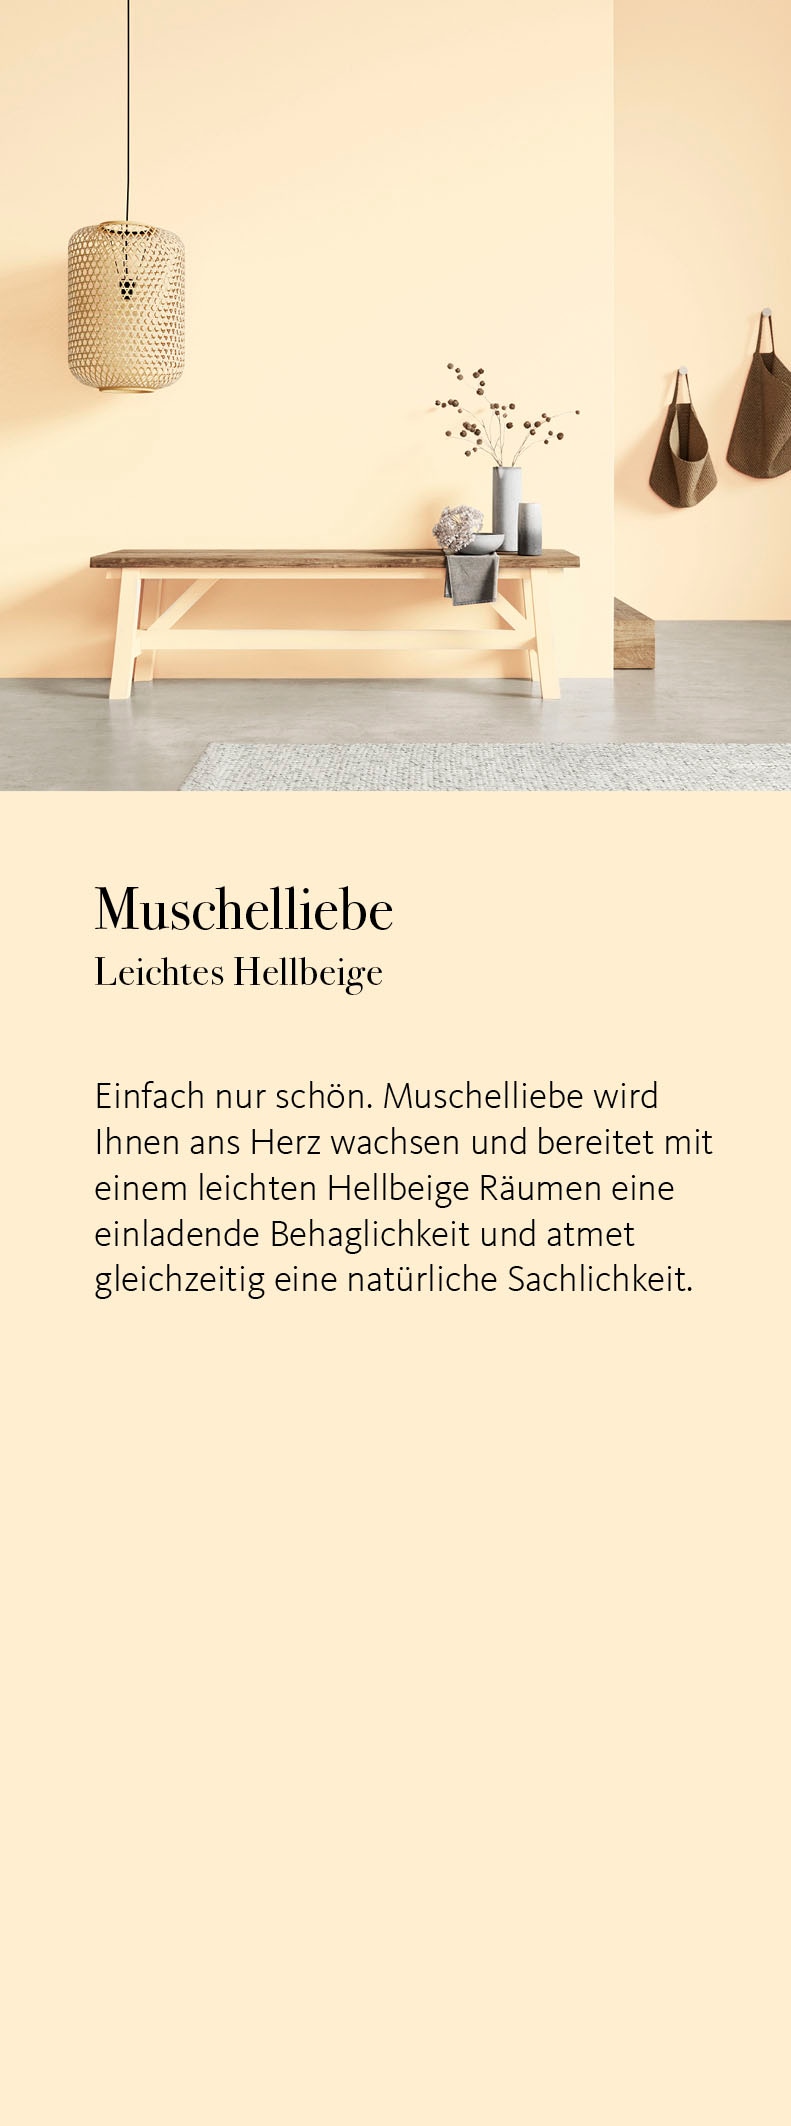 SCHÖNER WOHNEN FARBE Wand- und Deckenfarbe »Naturell Kreidefarbe«, 2,5 Liter, pudermatt, auch für Möbel geeignet, German Brand Award 2023